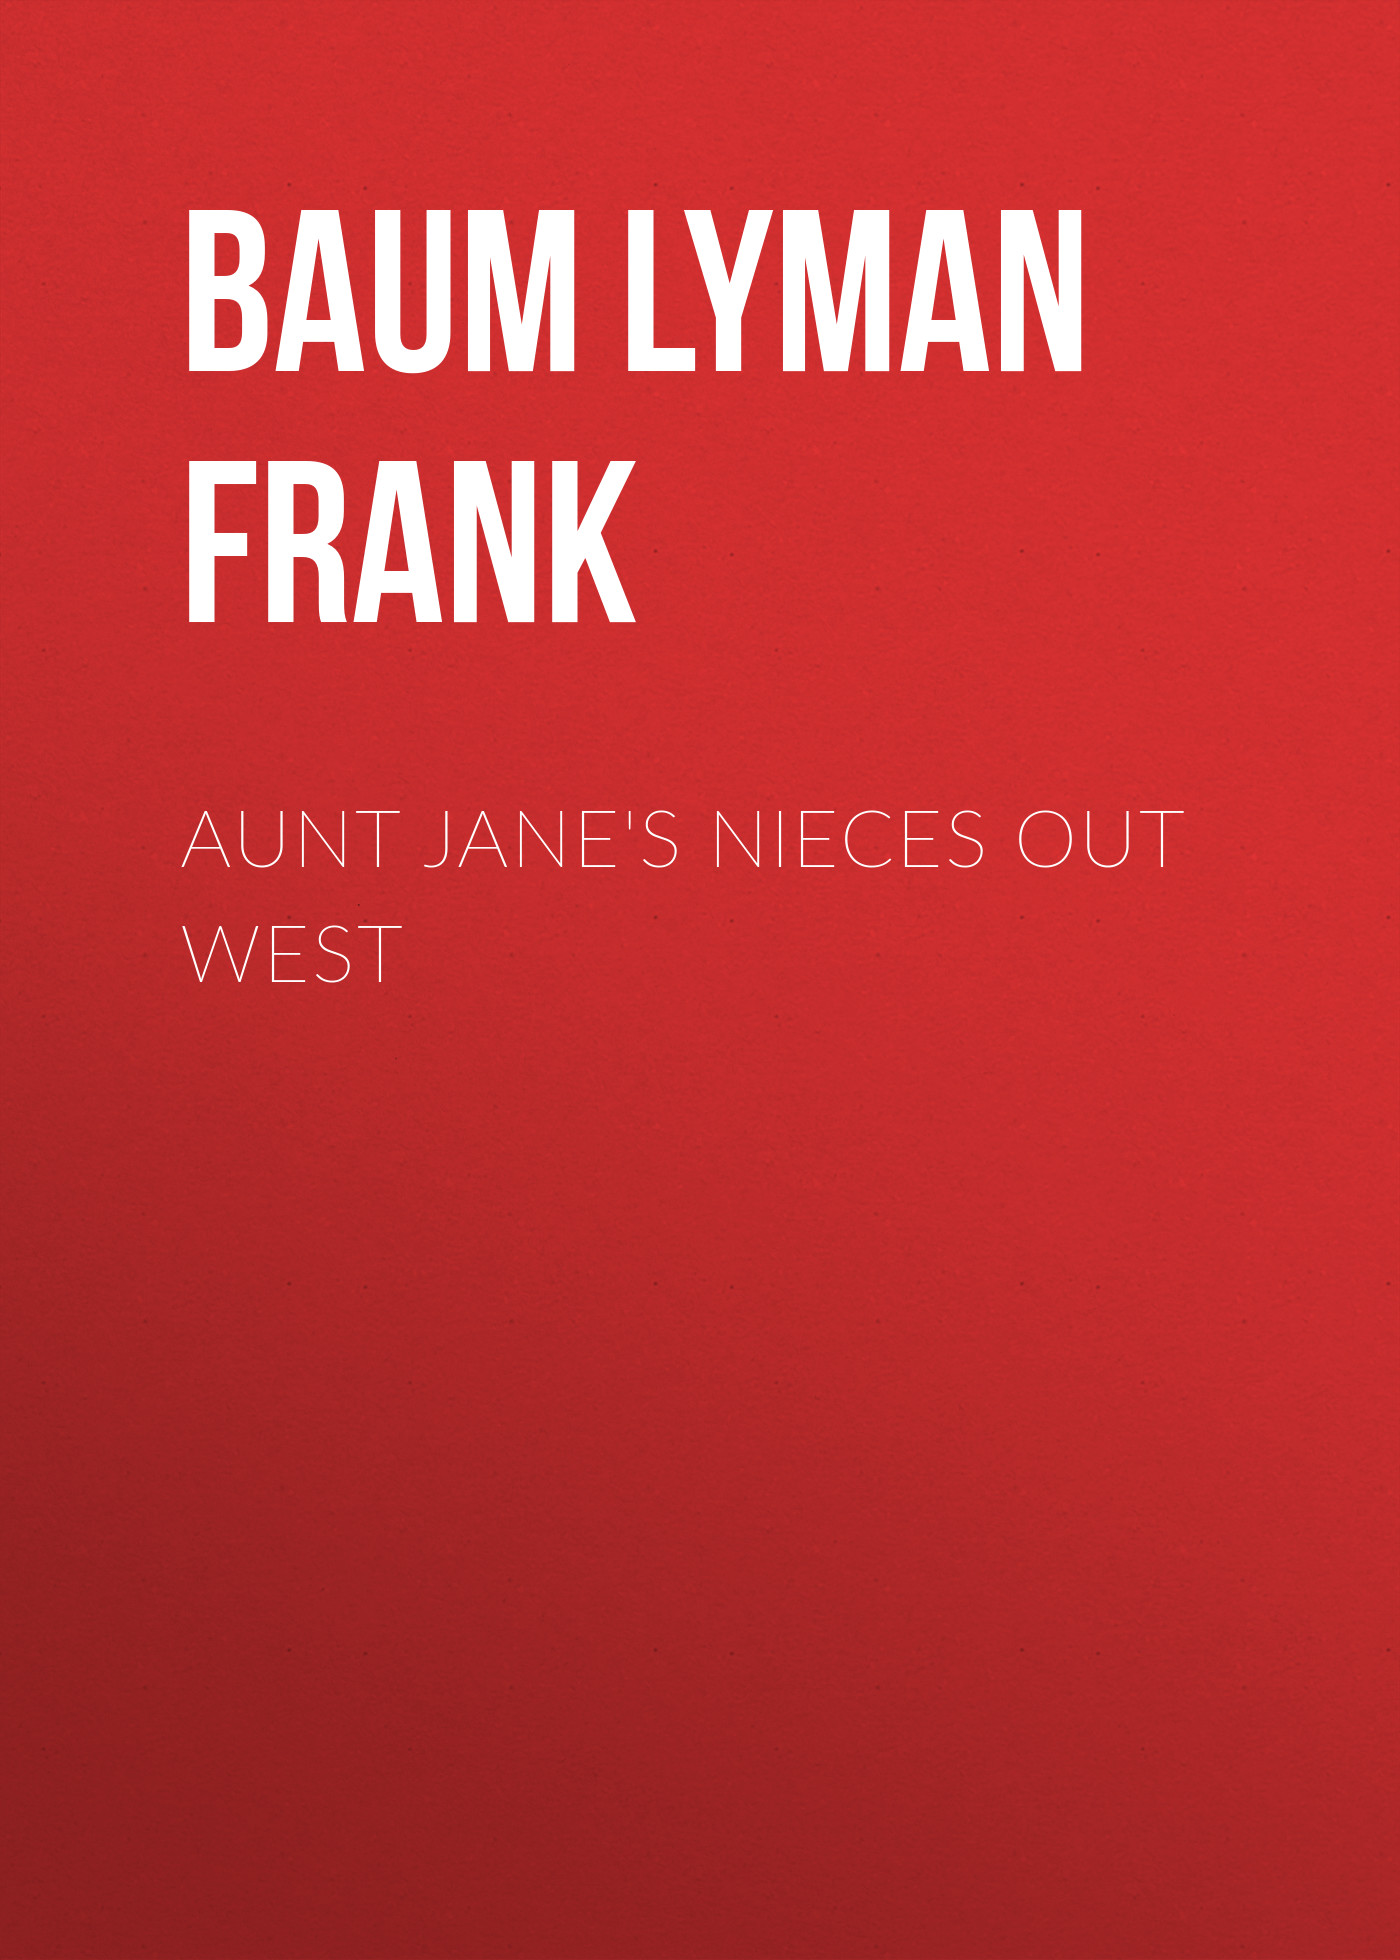 Книга Aunt Jane's Nieces out West из серии , созданная Lyman Baum, может относится к жанру Зарубежная старинная литература, Зарубежная классика. Стоимость электронной книги Aunt Jane's Nieces out West с идентификатором 25019067 составляет 0 руб.